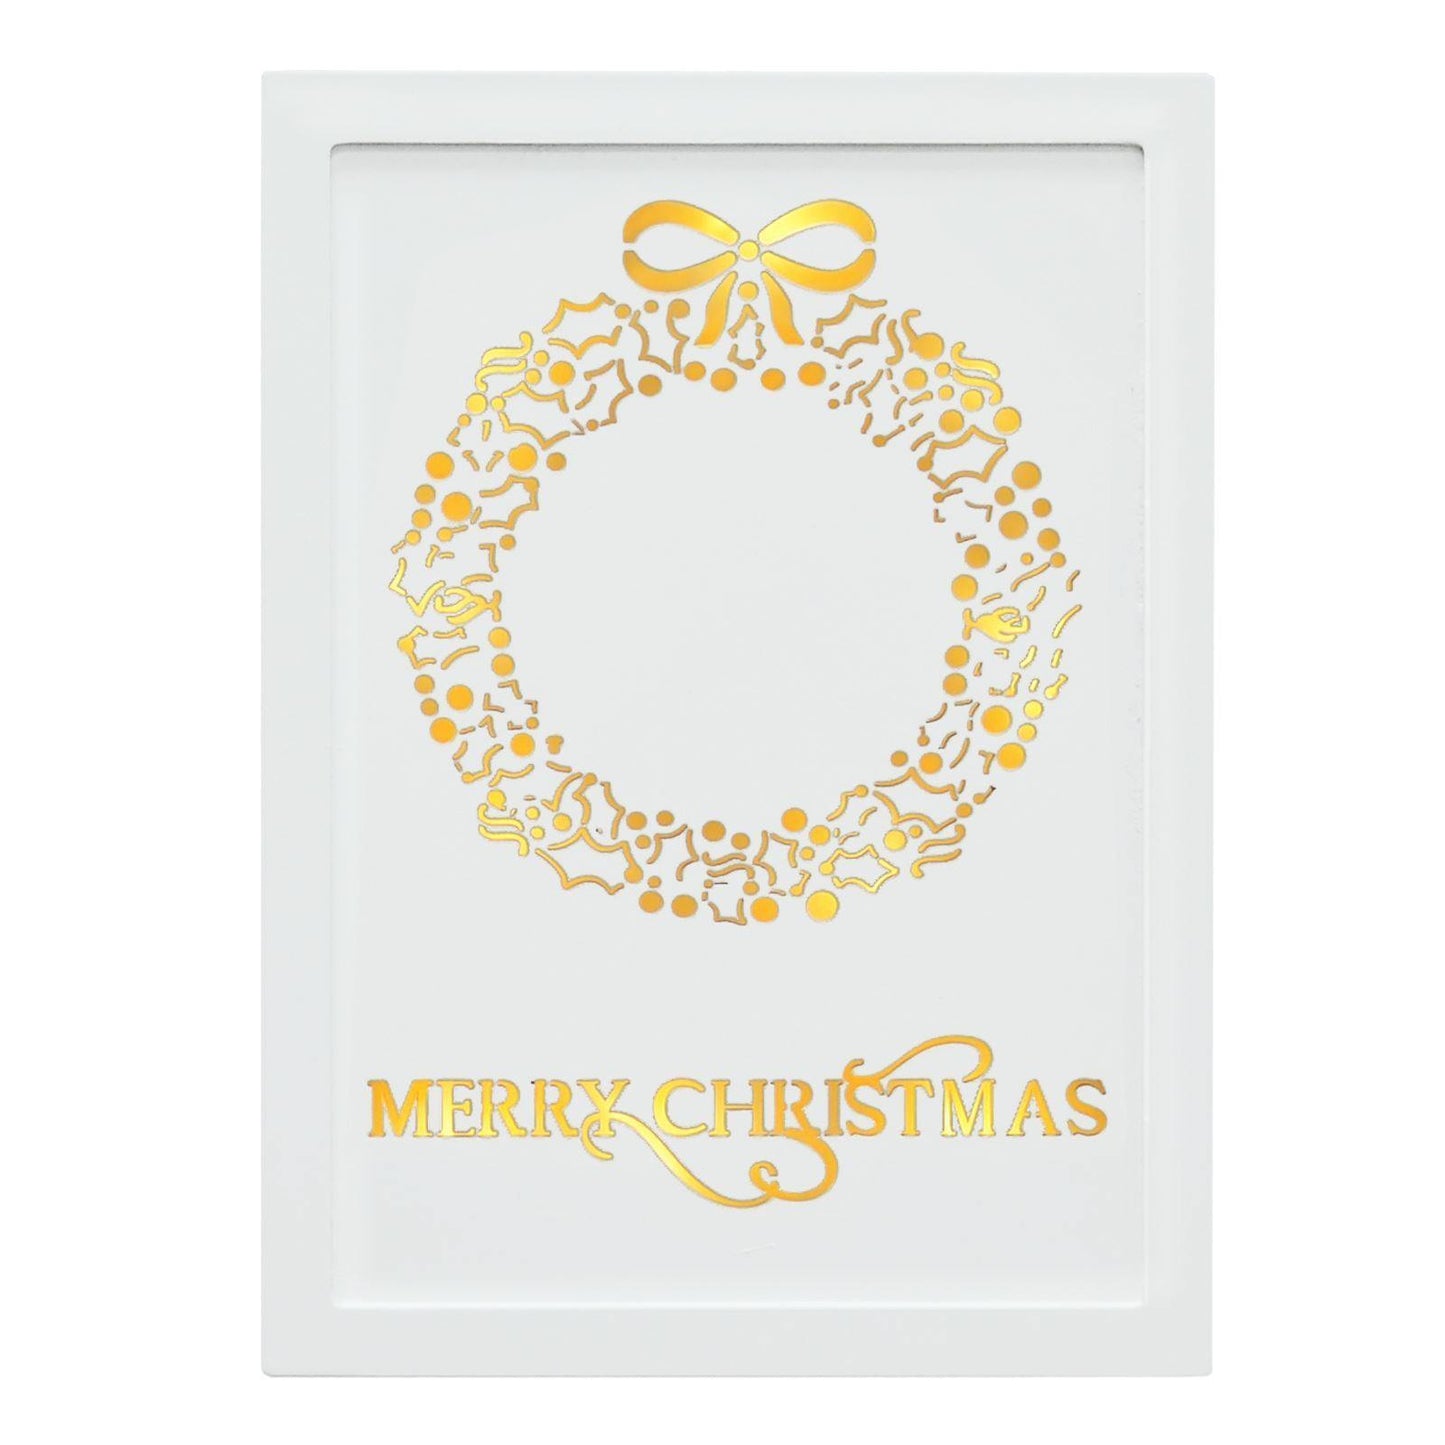 Mr Crimbo 11" Light Up White Wall Plaque Christmas Decoration - MrCrimbo.co.uk -XS5075 - Wreath Design -decorations